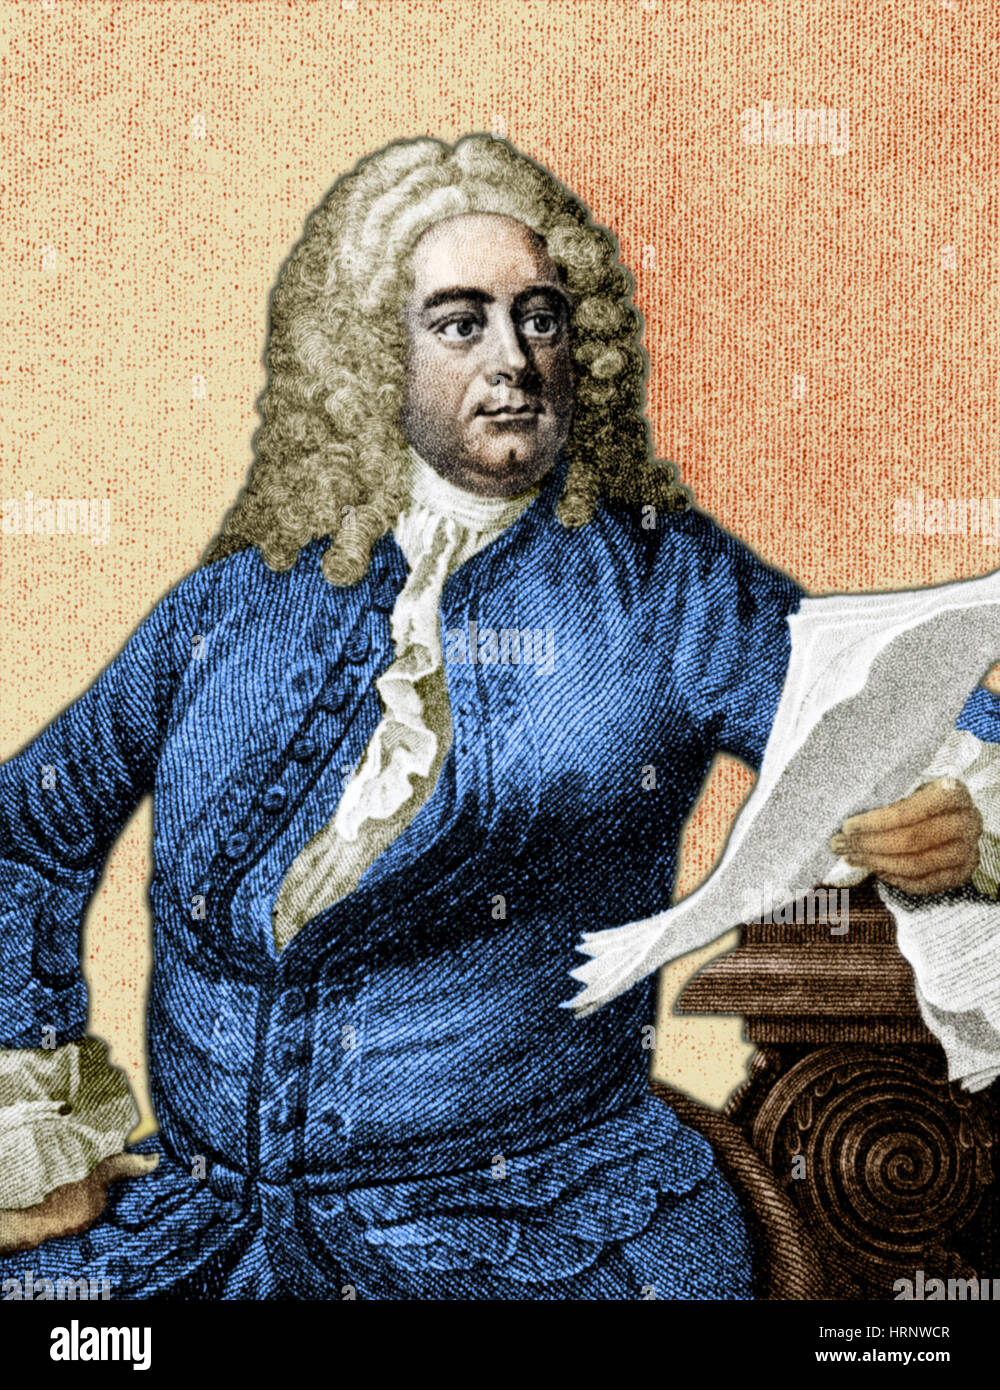 George Handel, compositor barroco alemán Foto de stock